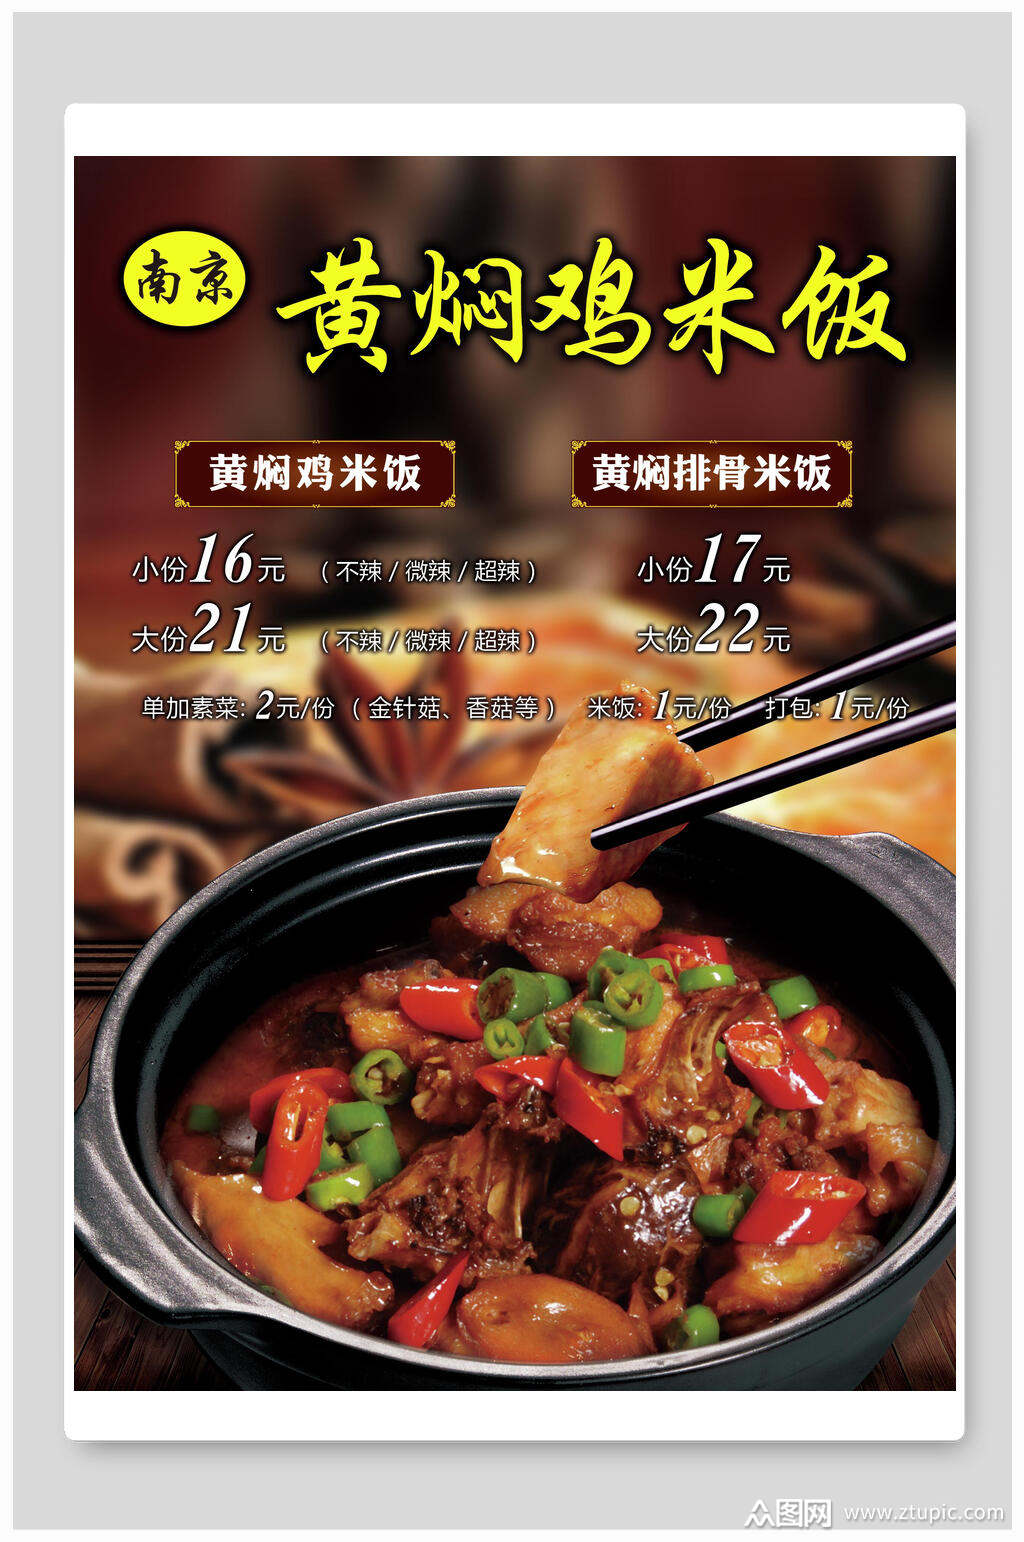 南京黄焖鸡米饭海报素材